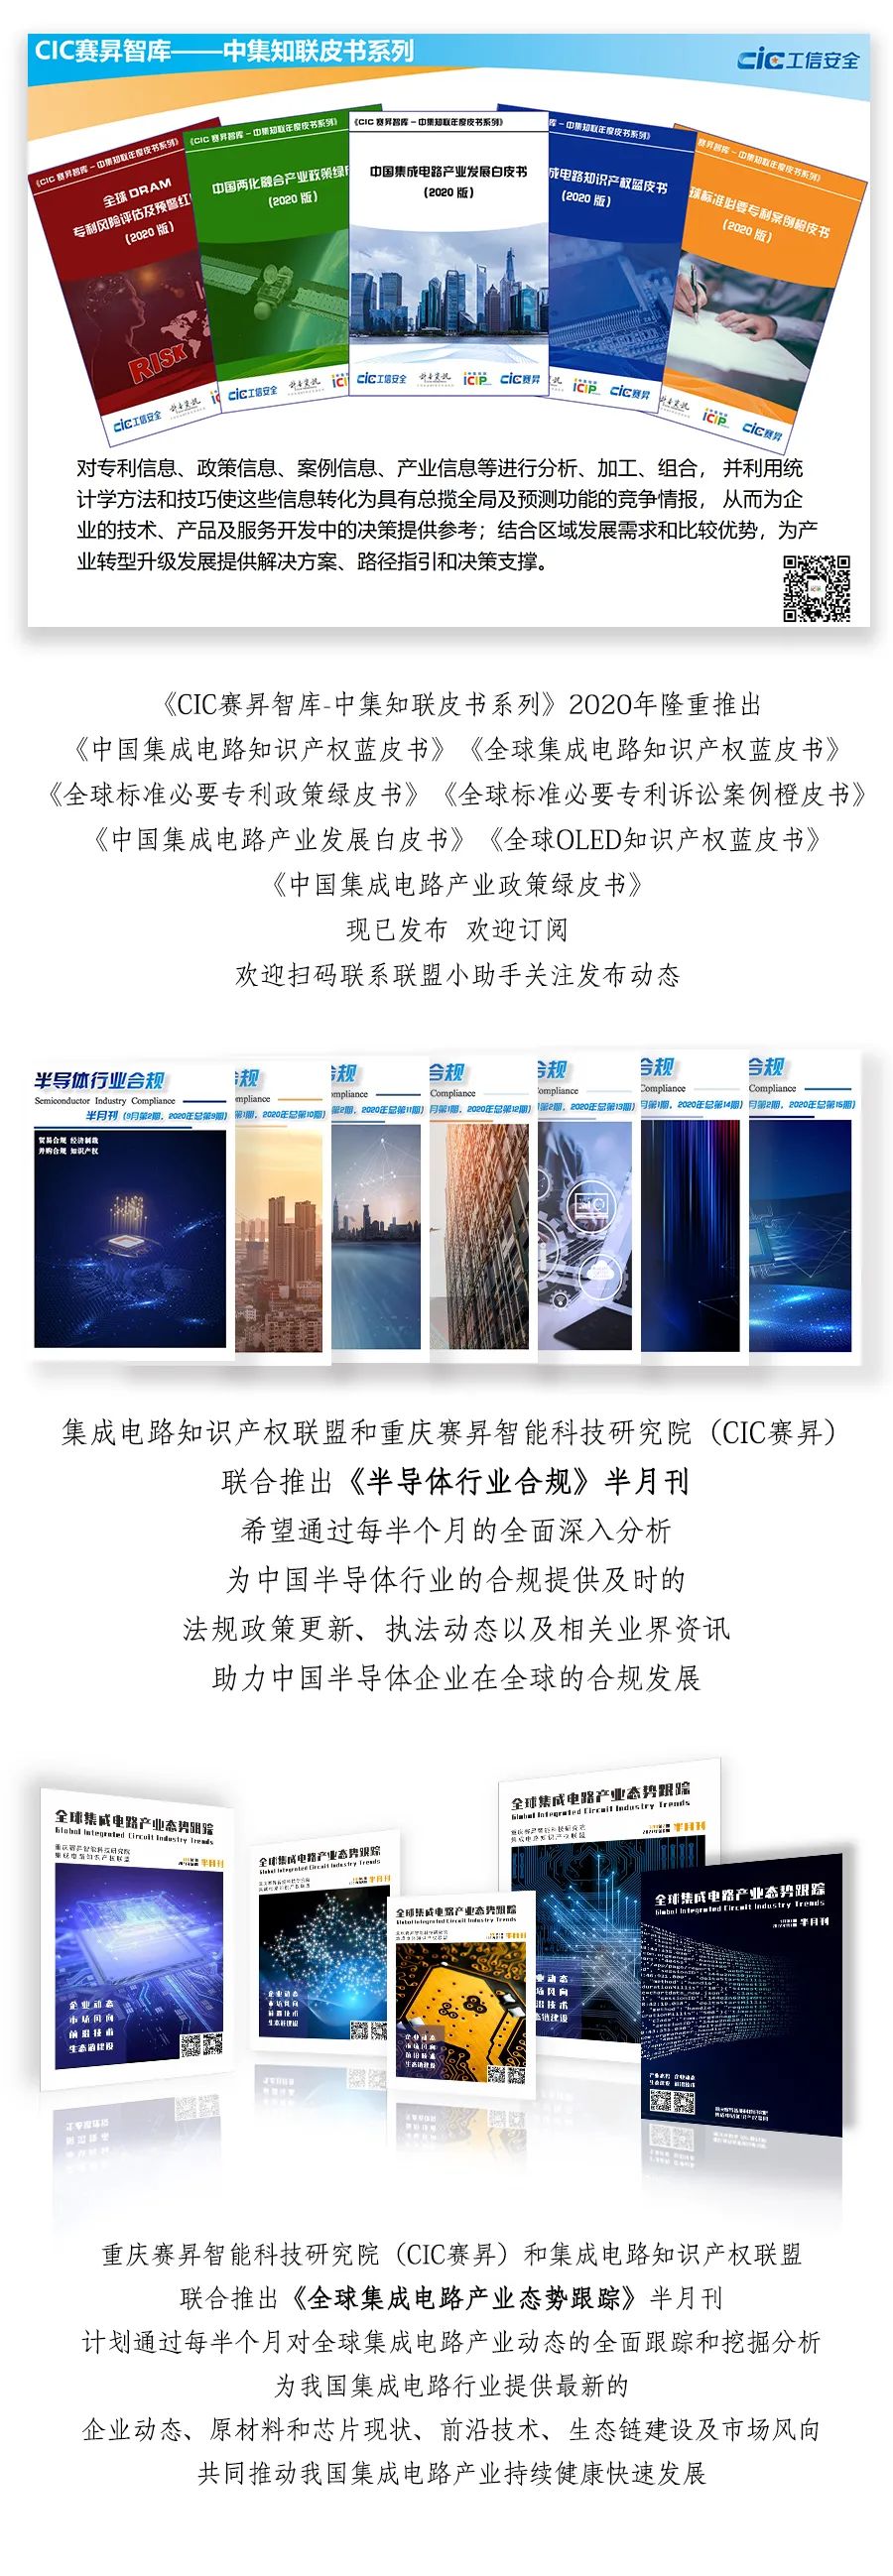 热烈欢迎重庆电子工程职业学院加入联盟